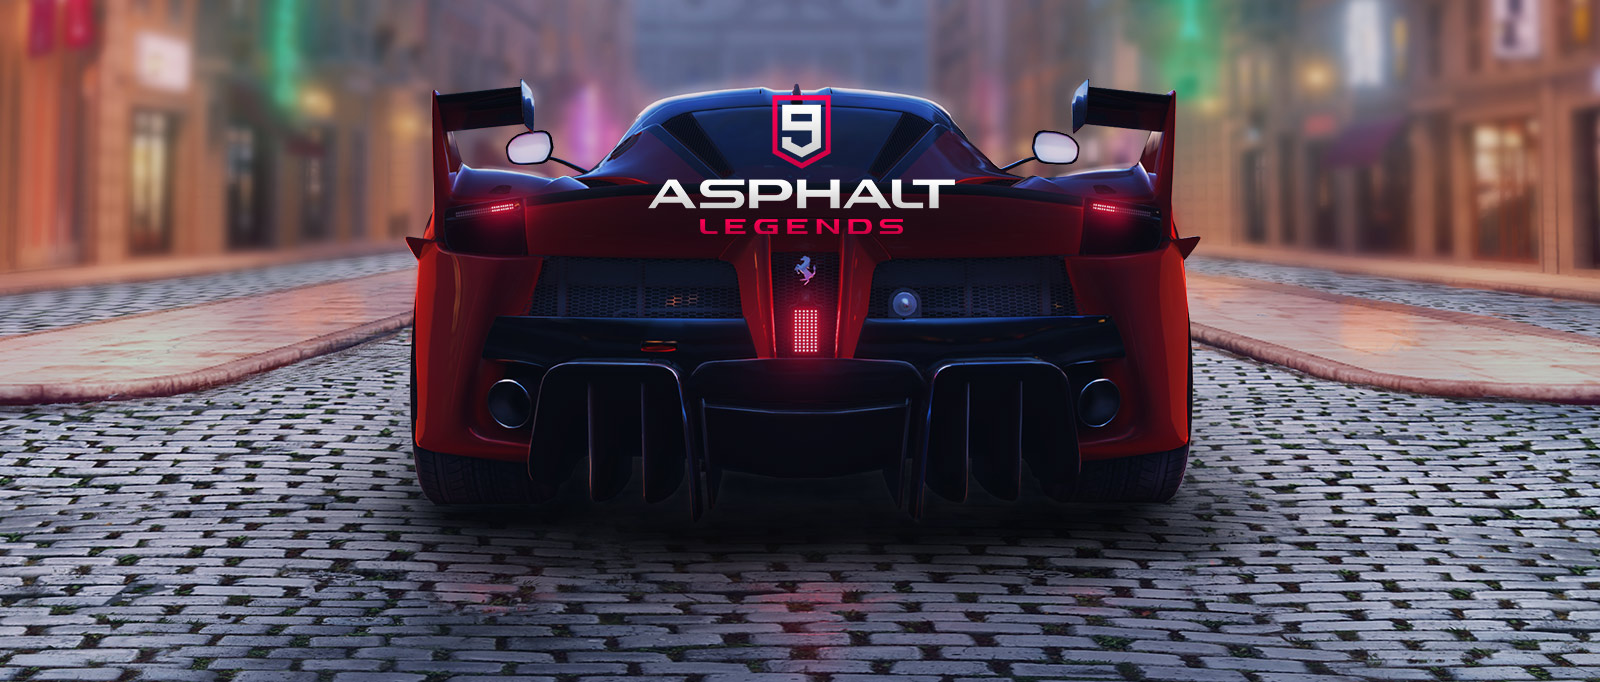 Image result for asphalt 9 legends